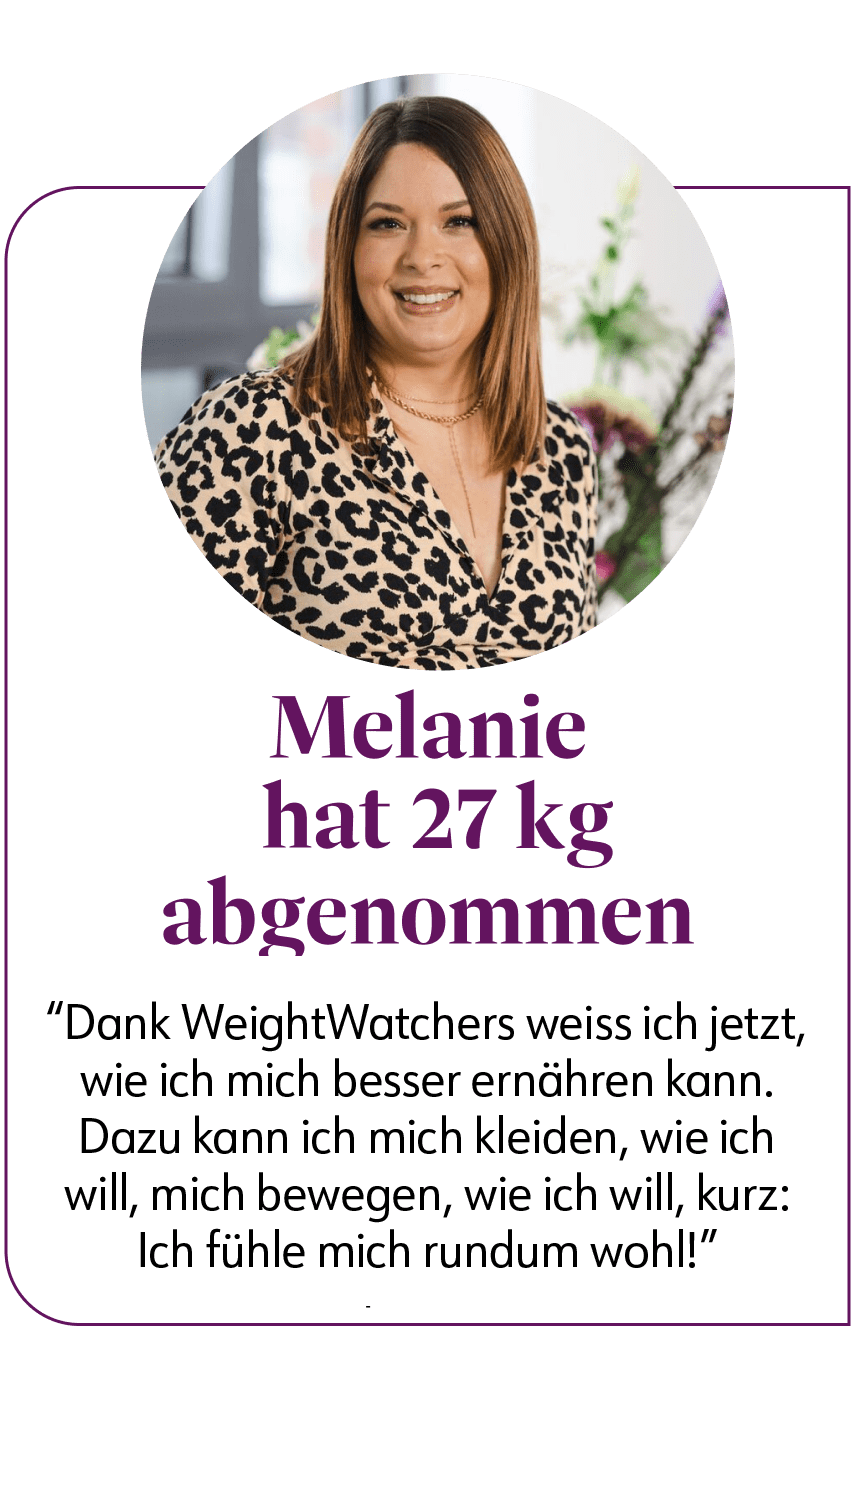 Melanie hat mit WeightWatchers 27,6 kg abgenommen. Sie sagt: "Dank WW weiß ich, wie ich mich gesund ernähren kann, und ich fühle mich grossartig!"